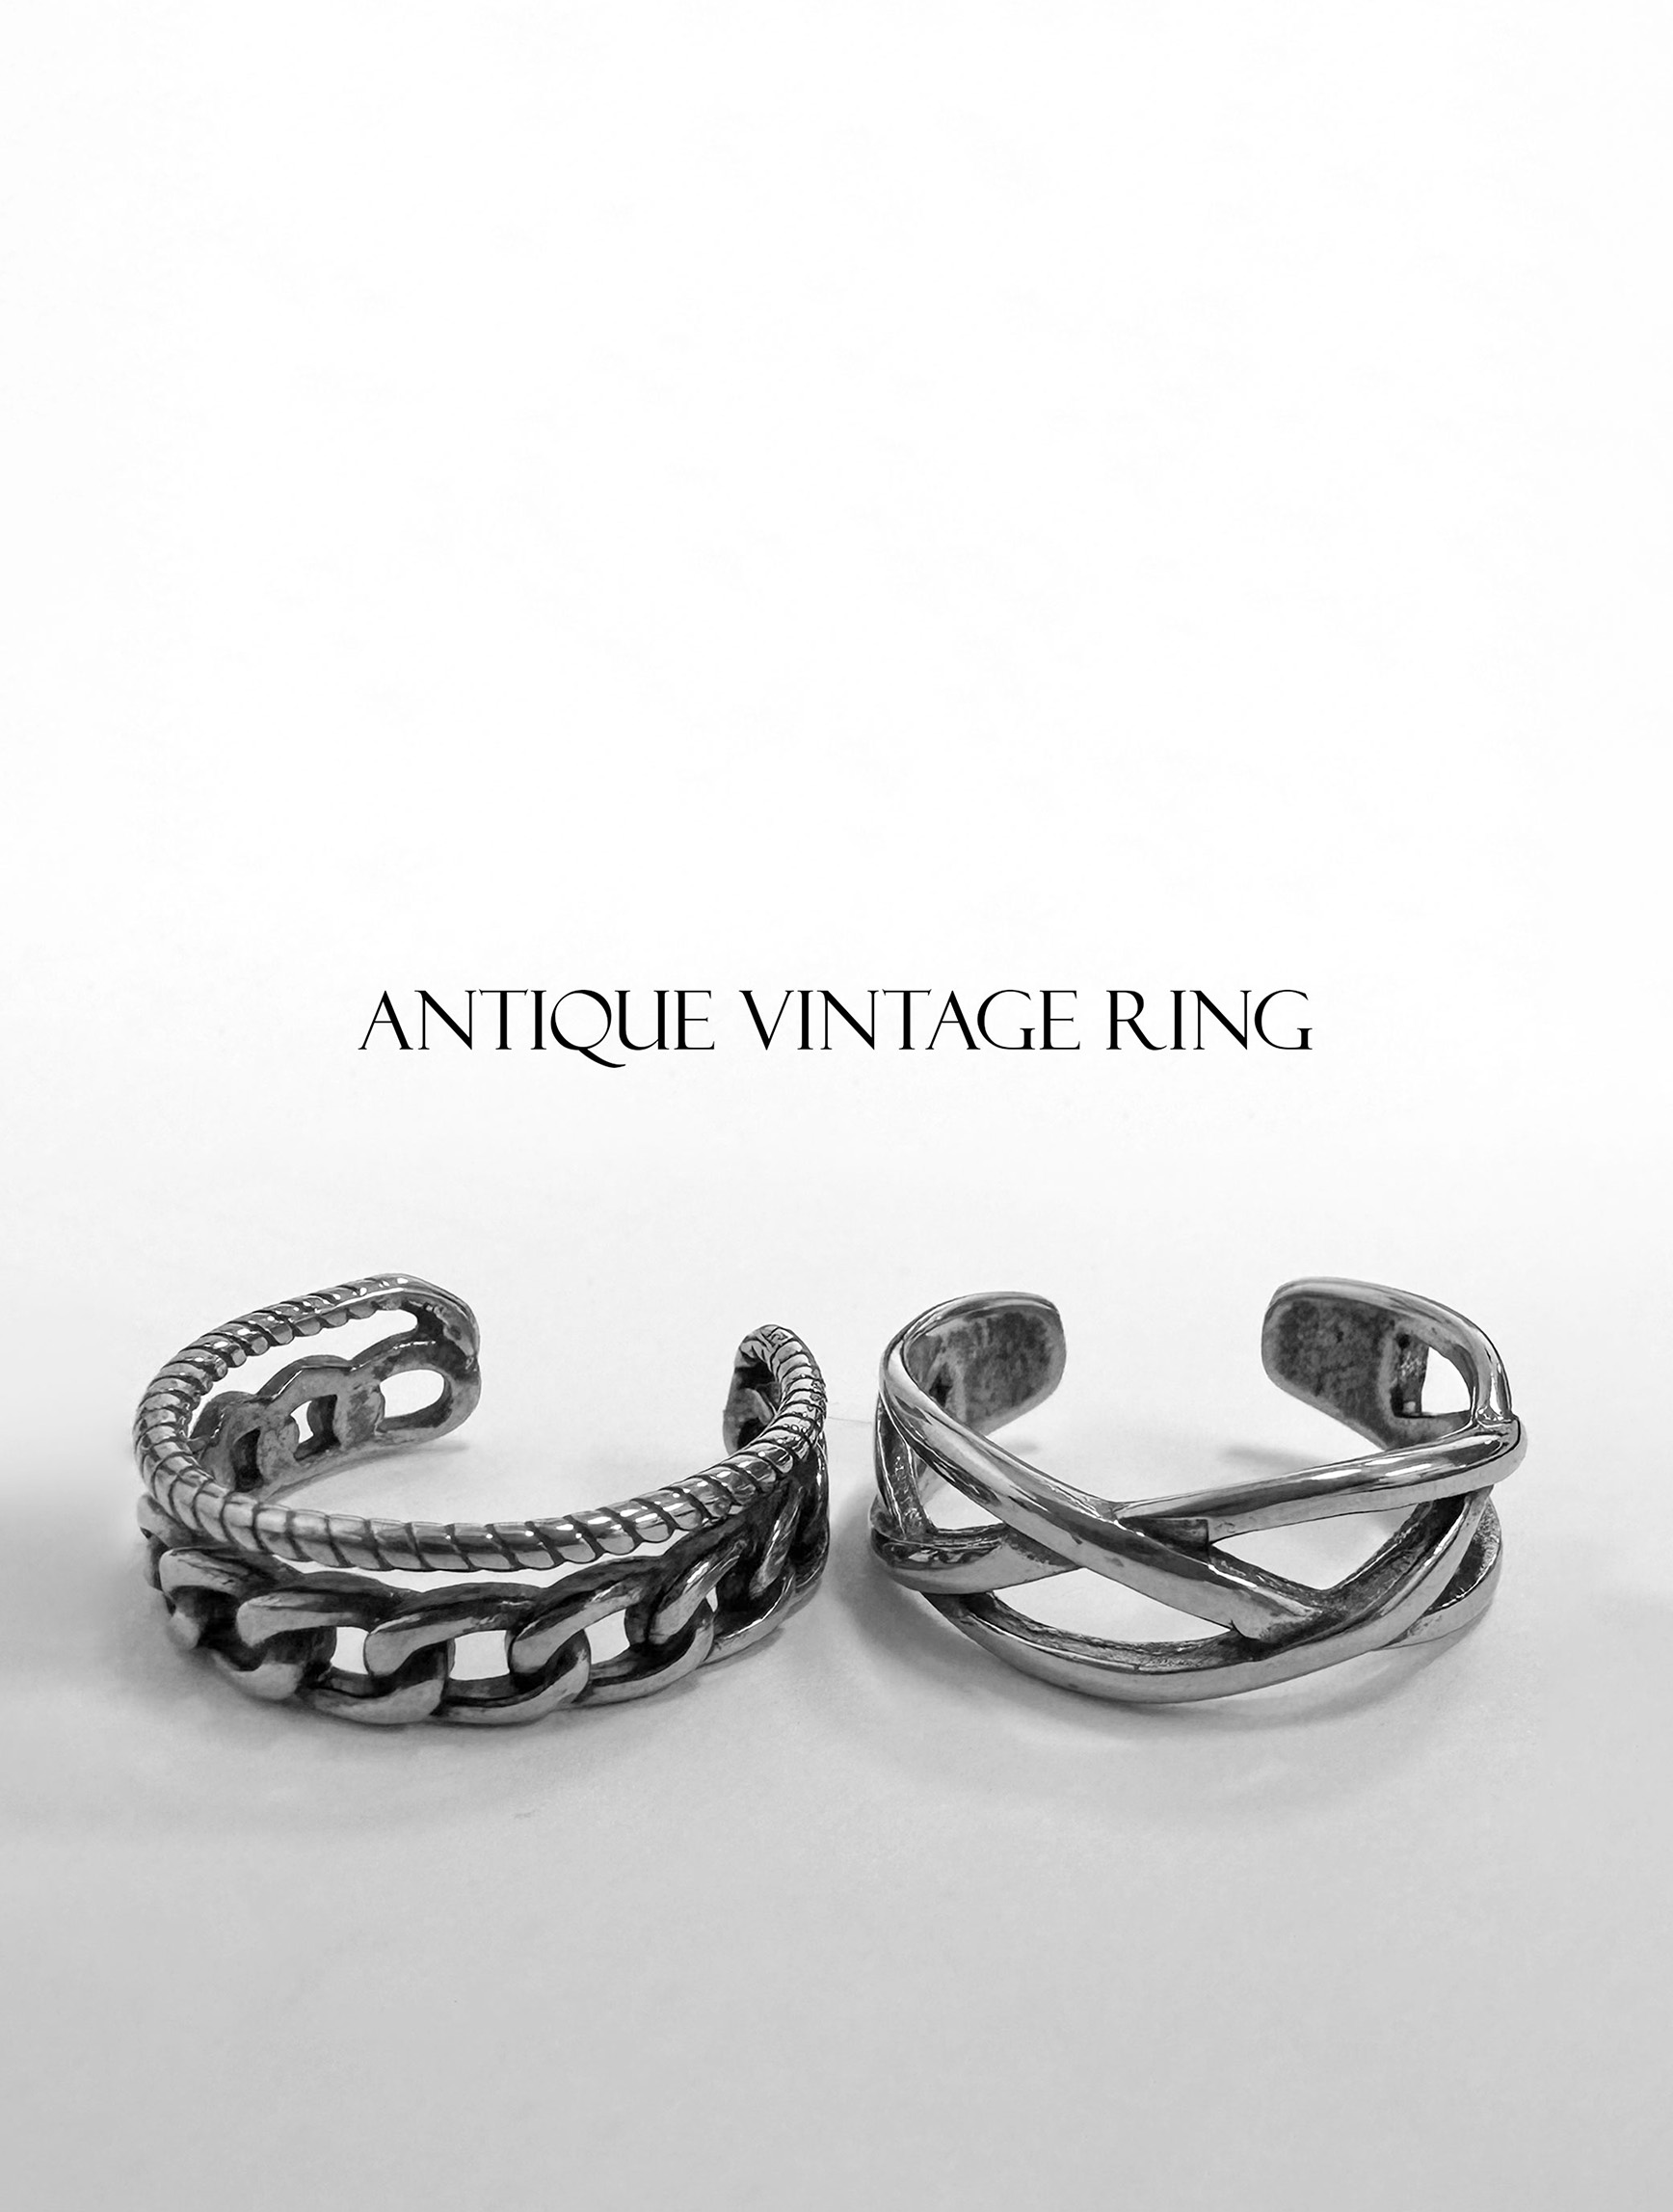 Vintage ring set